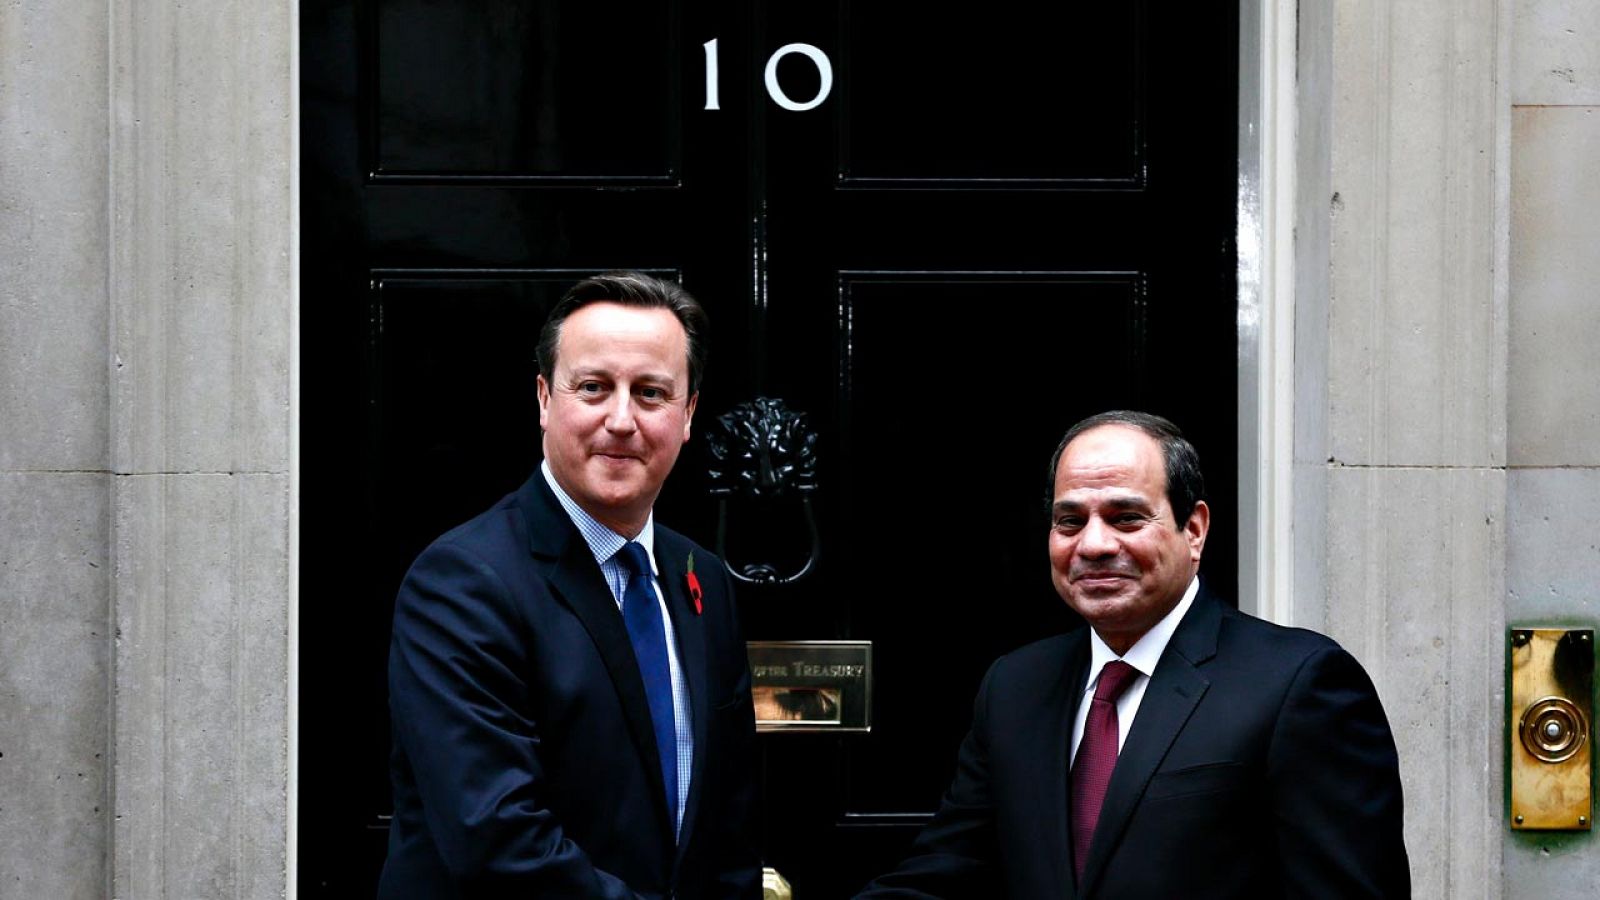 El primer ministro británico, David Cameron, y el presidente egipcio, Abdelfatah al Sisi, antes de la reunión que han mantenido en Londres